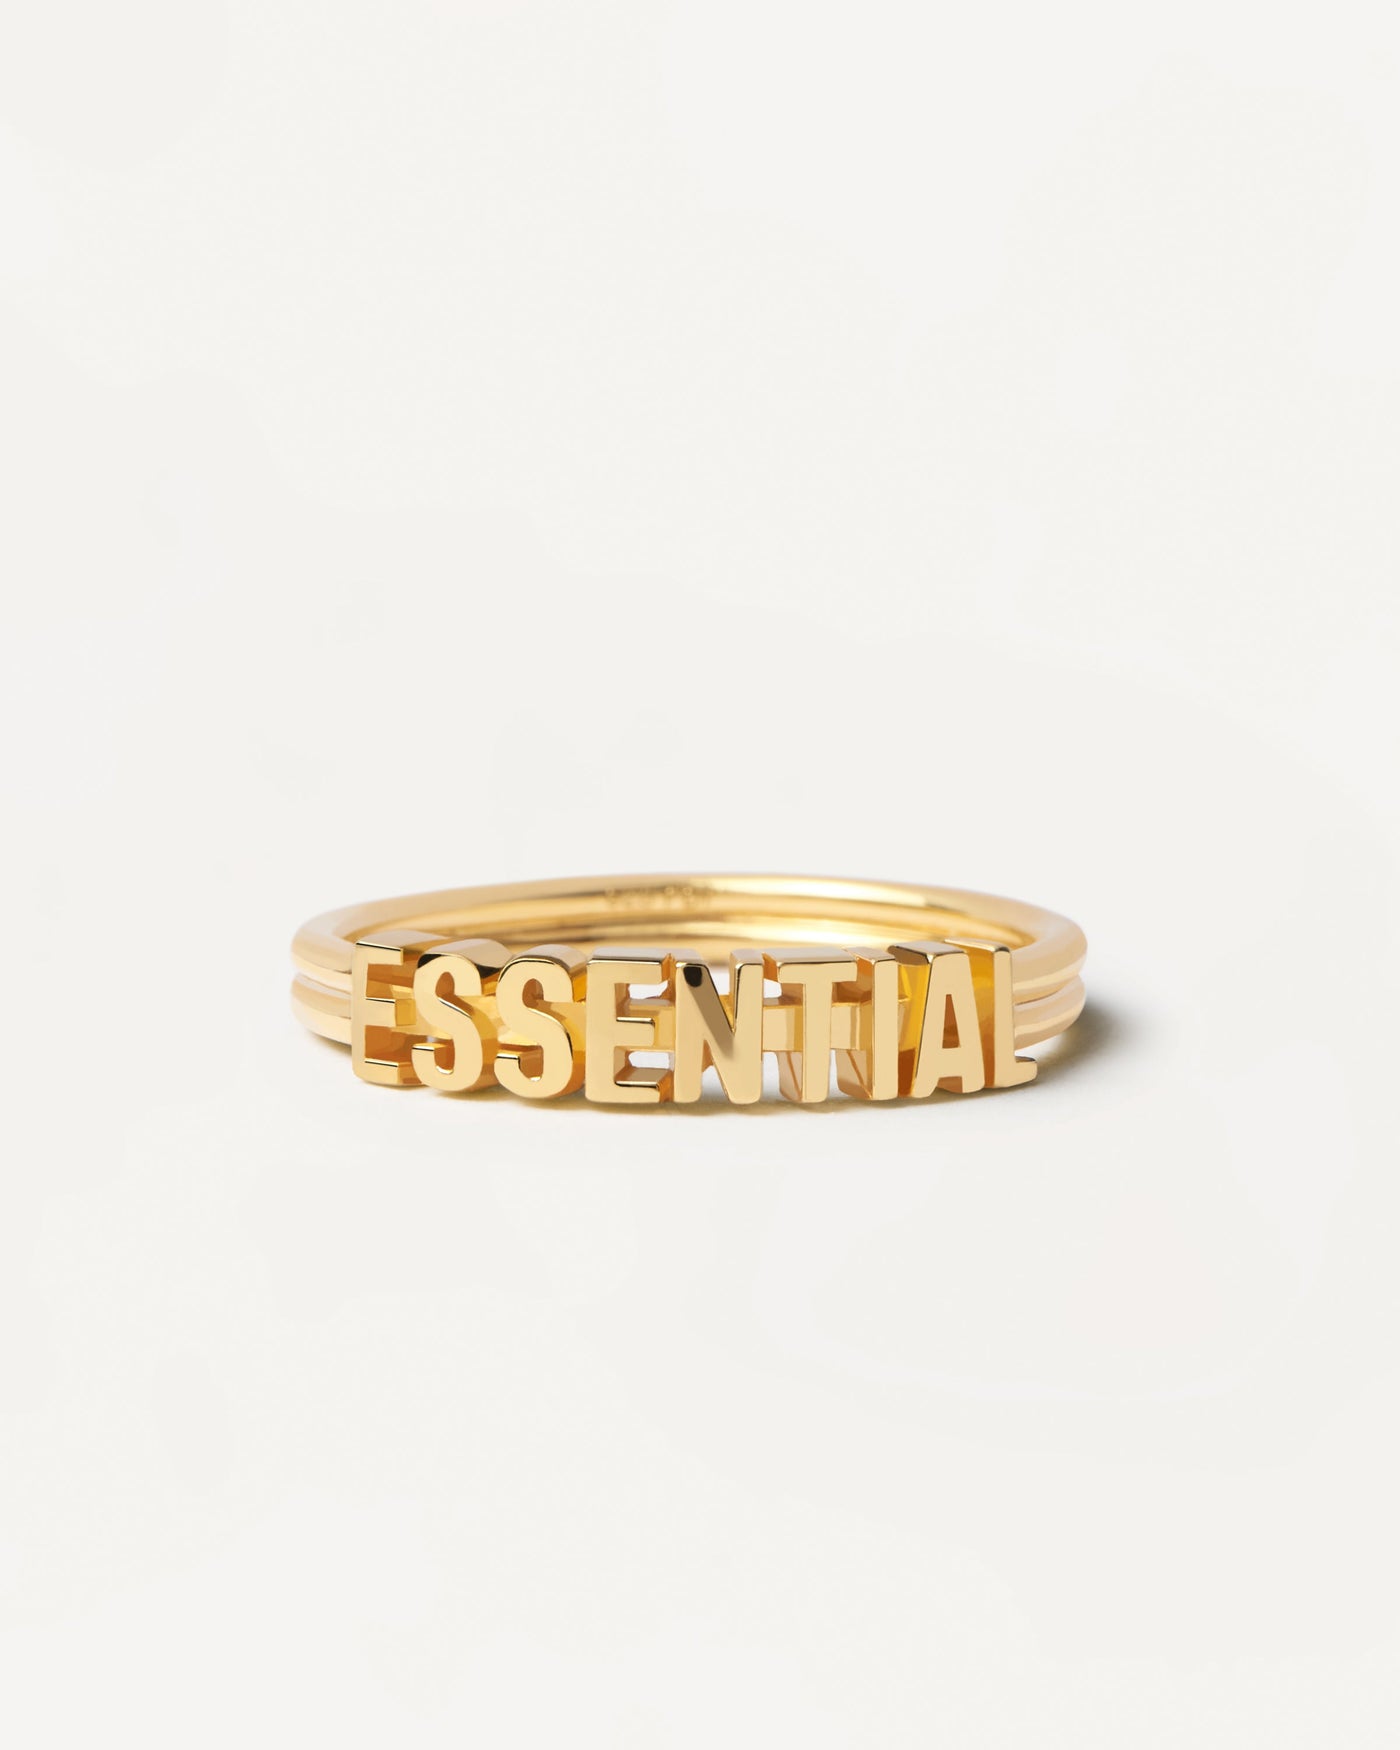 Essential Ring. Essentielles Anspruchsring in goldplattiertem Silber mit 3 Bändern Design. Erhalten Sie die neuesten Produkte von PDPAOLA. Geben Sie Ihre Bestellung sicher auf und erhalten Sie diesen Bestseller.